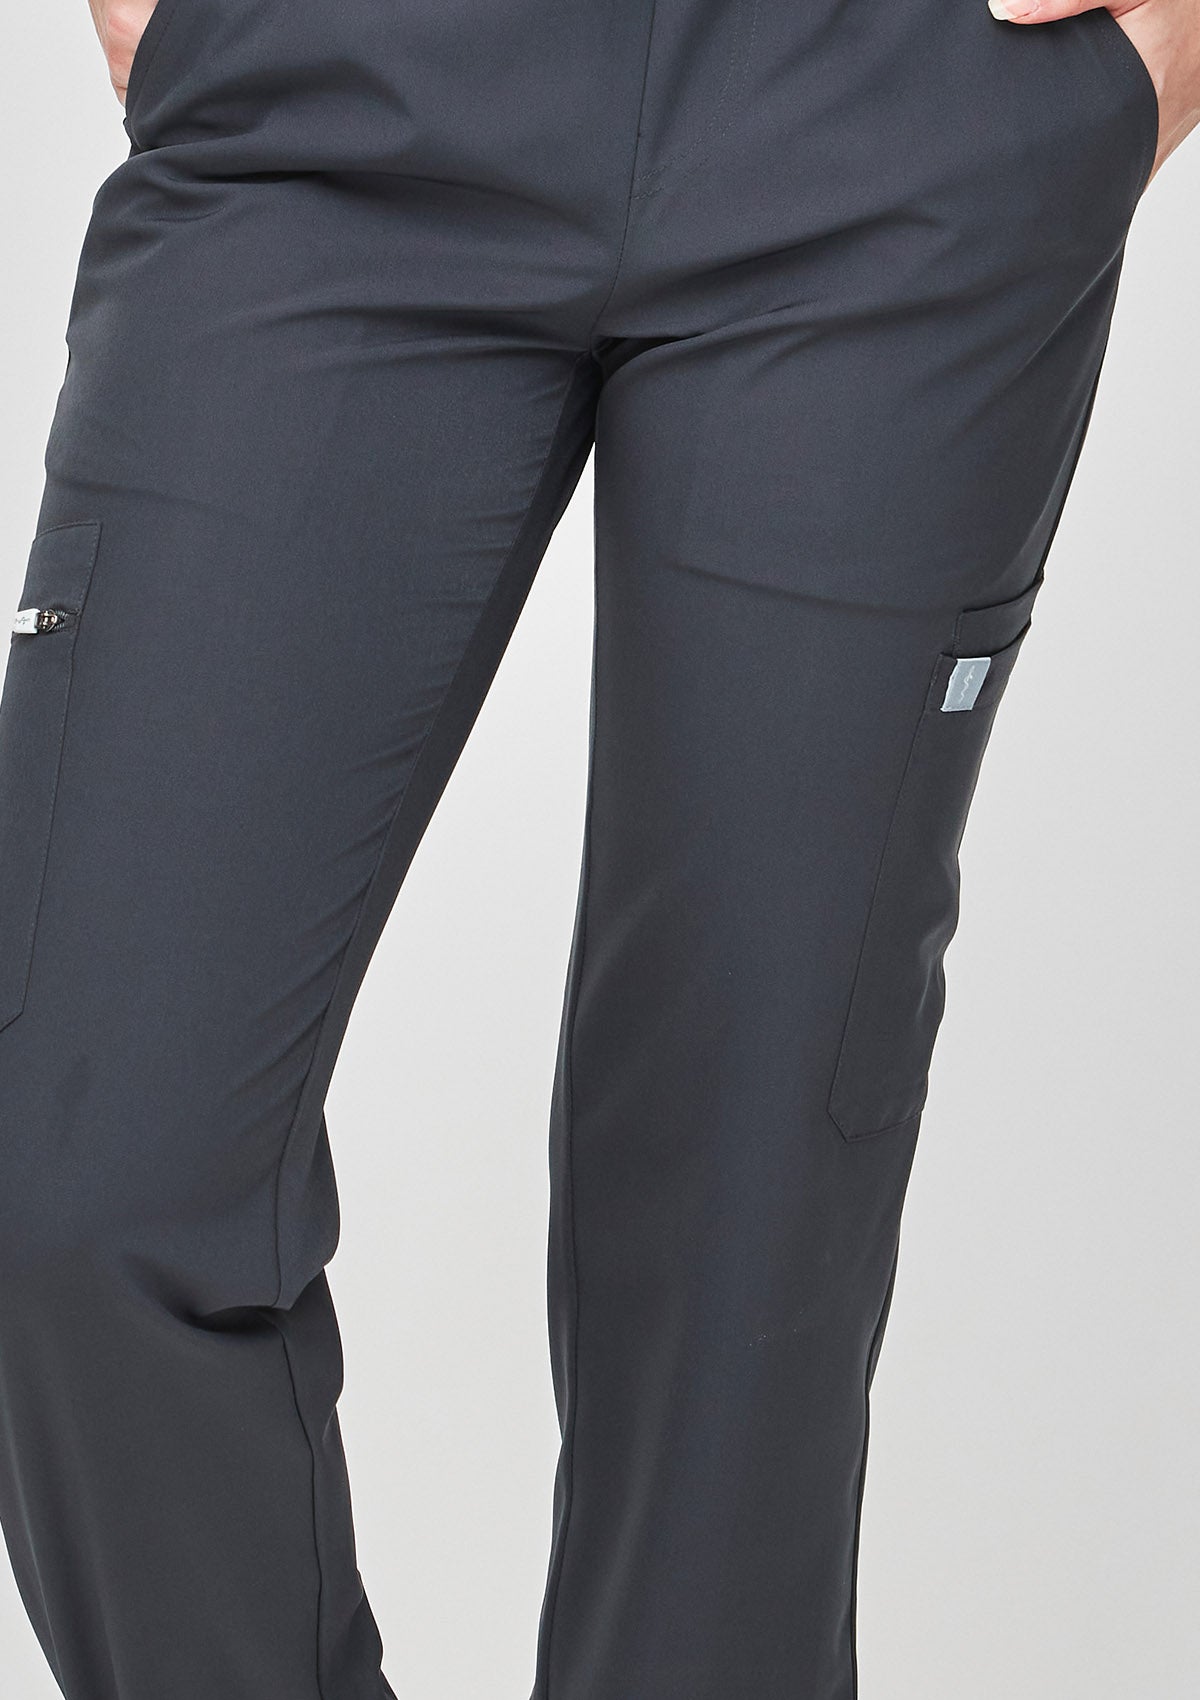 Jogger MoveTech® Scrub Pants 2.0 - Women / Graphite